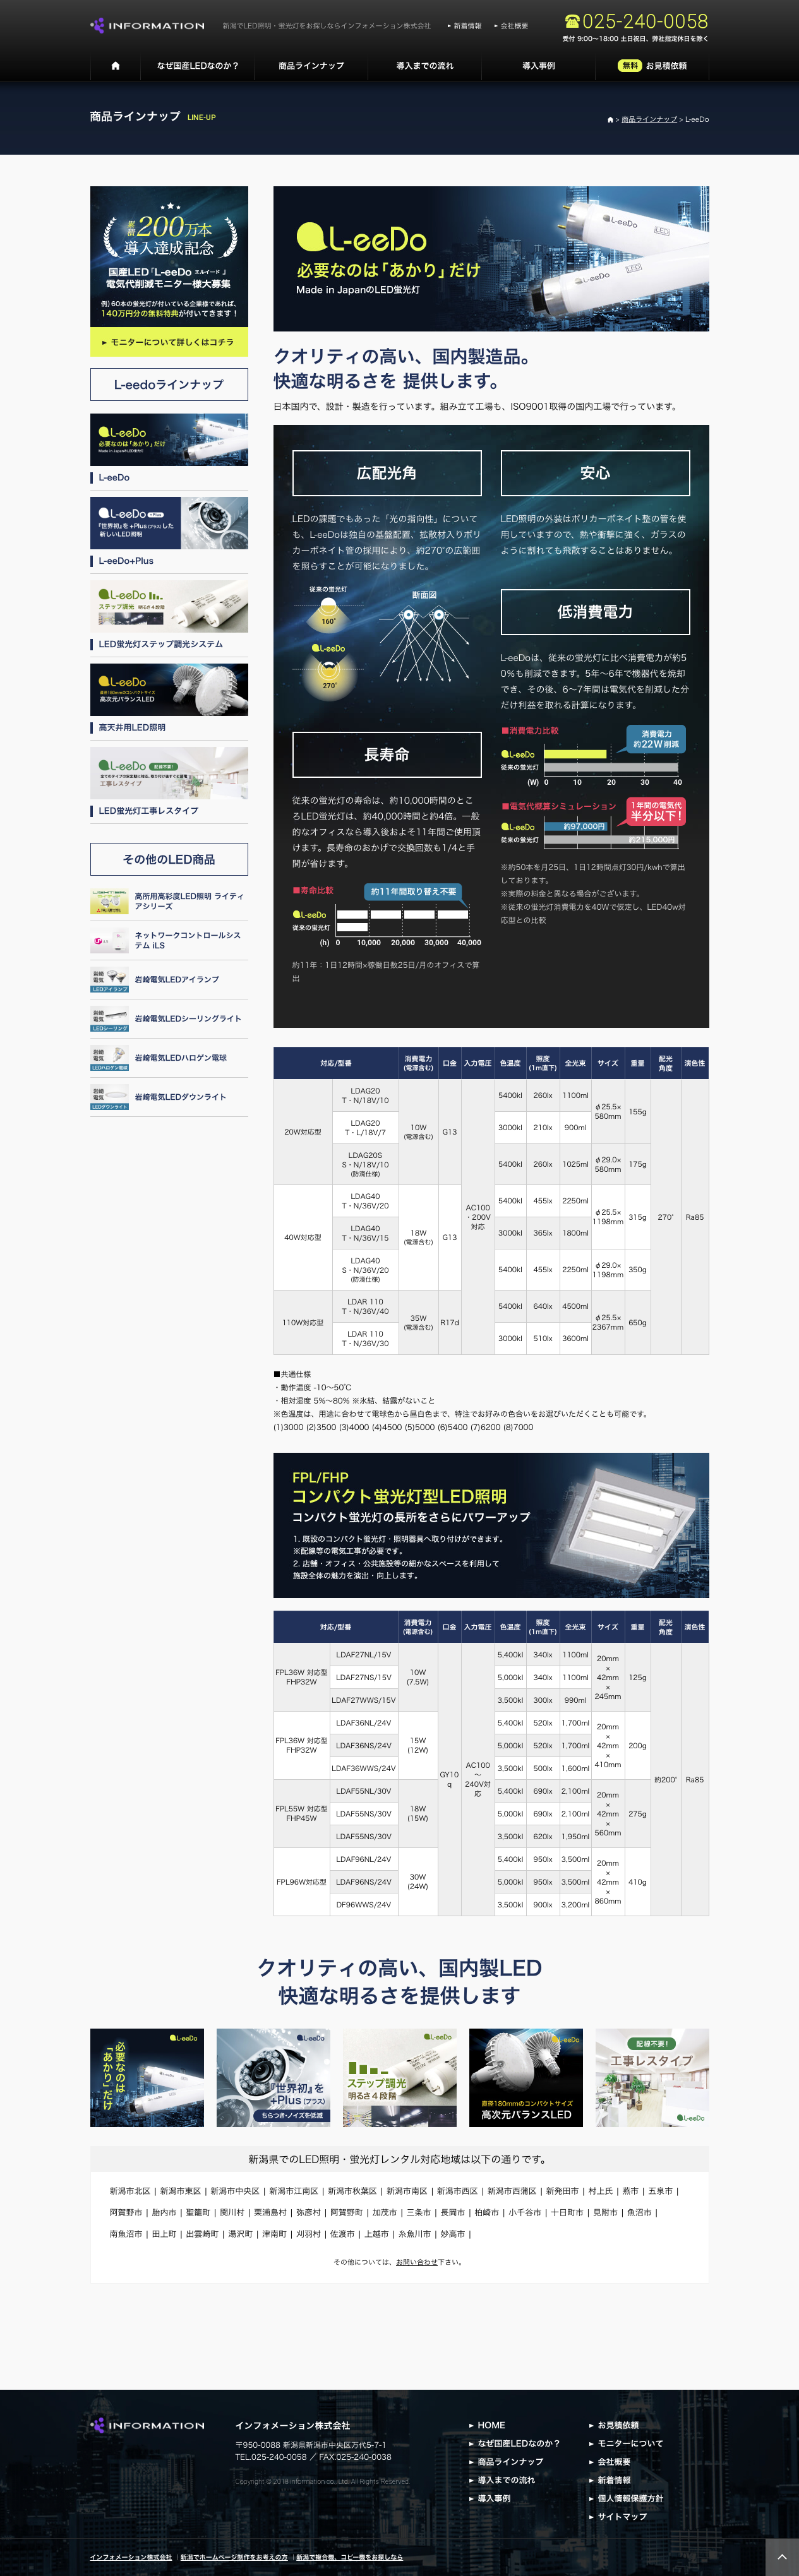 新潟led総合サイト 様のホームページ